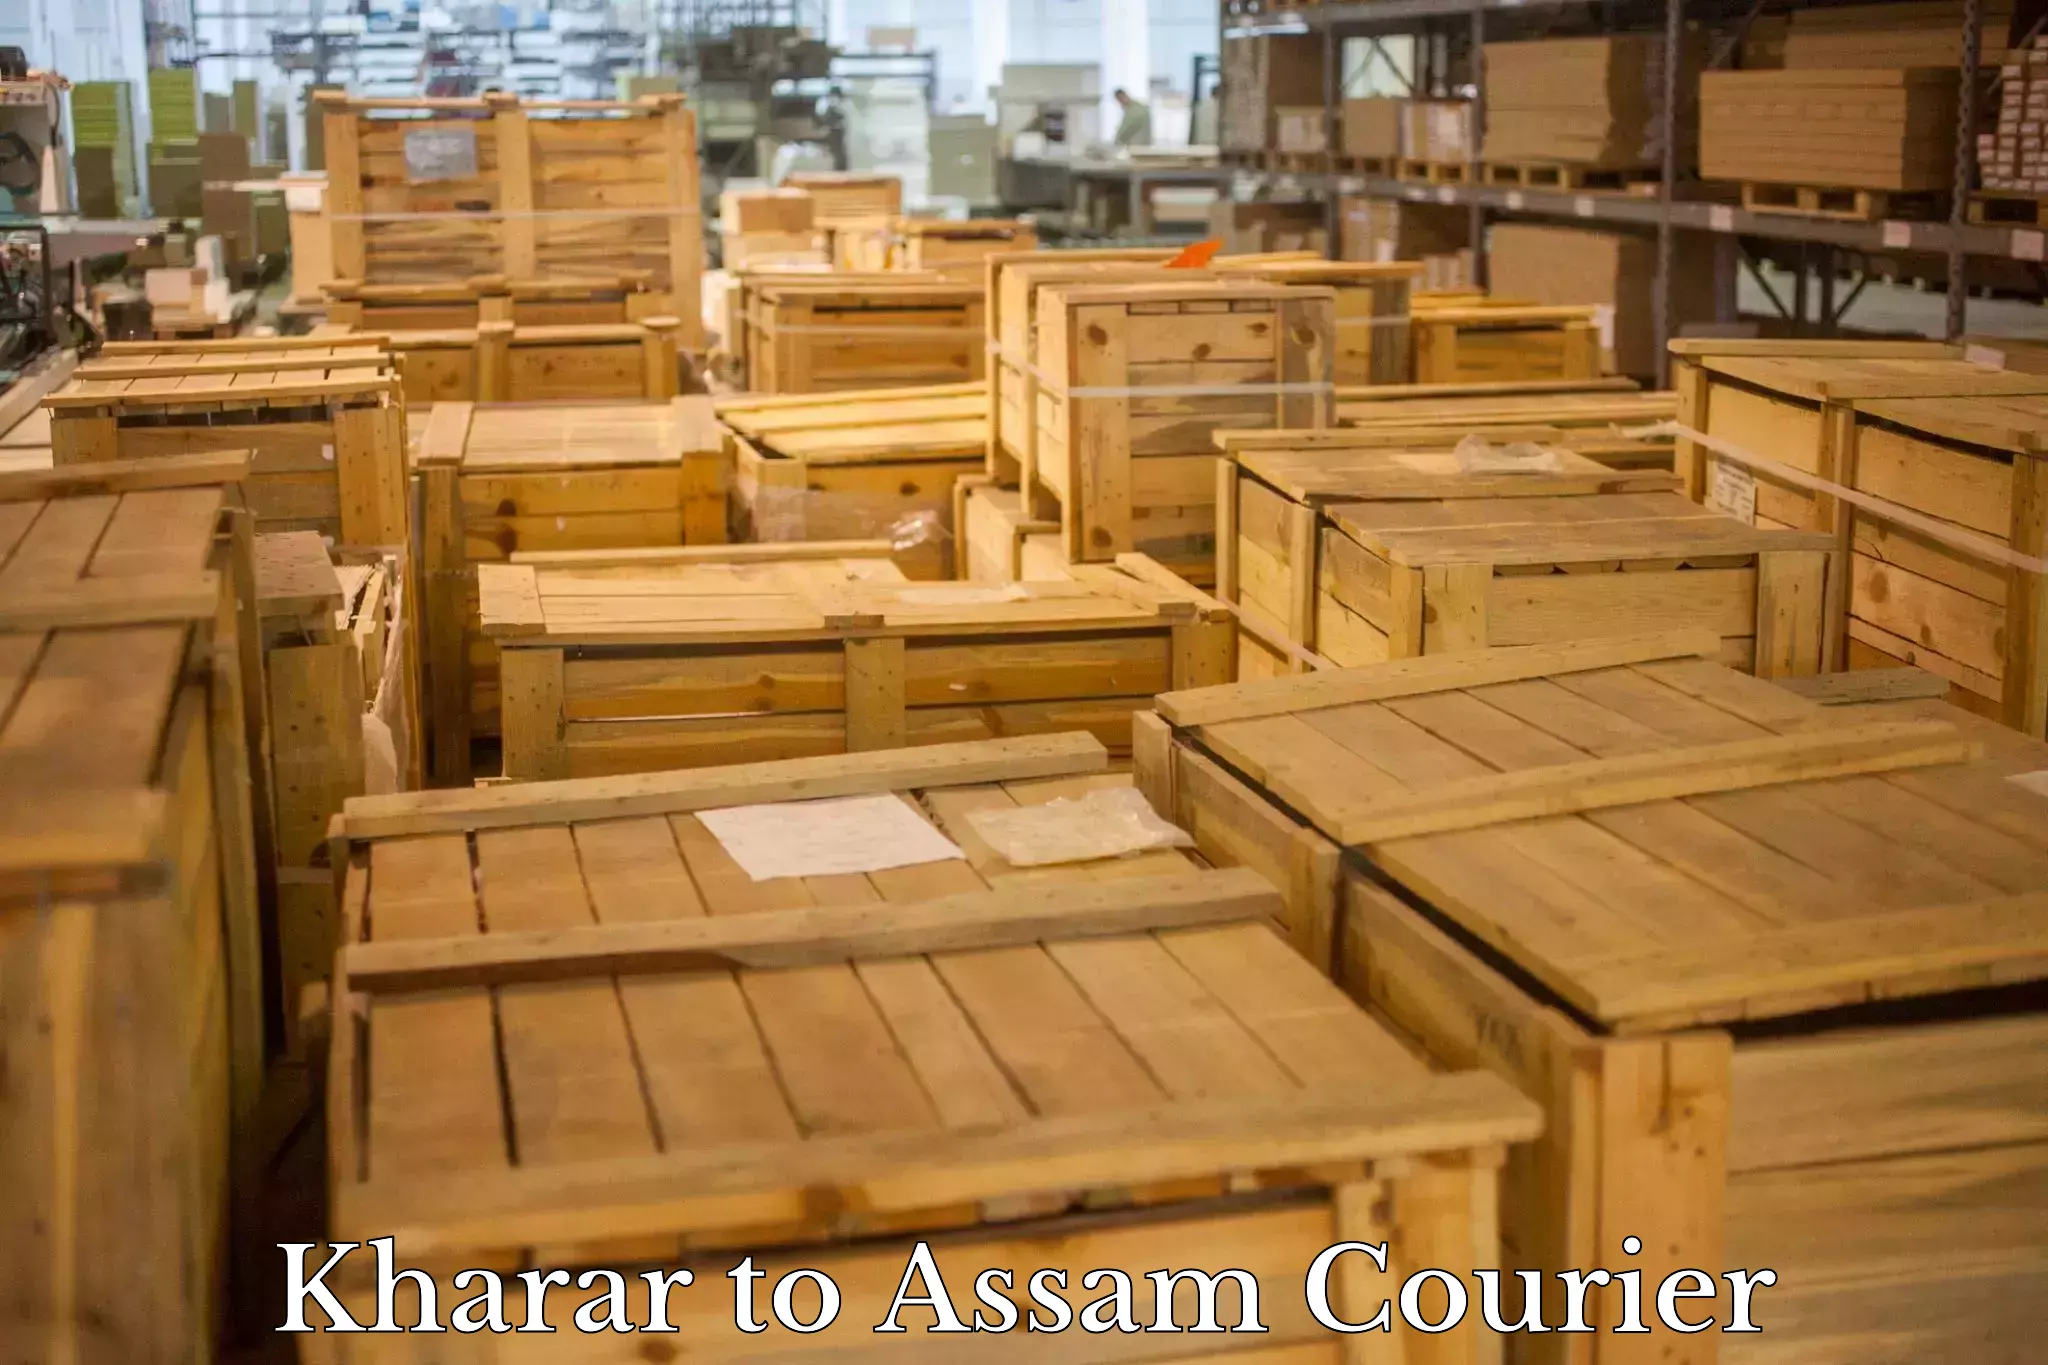 Digital courier platforms Kharar to Assam